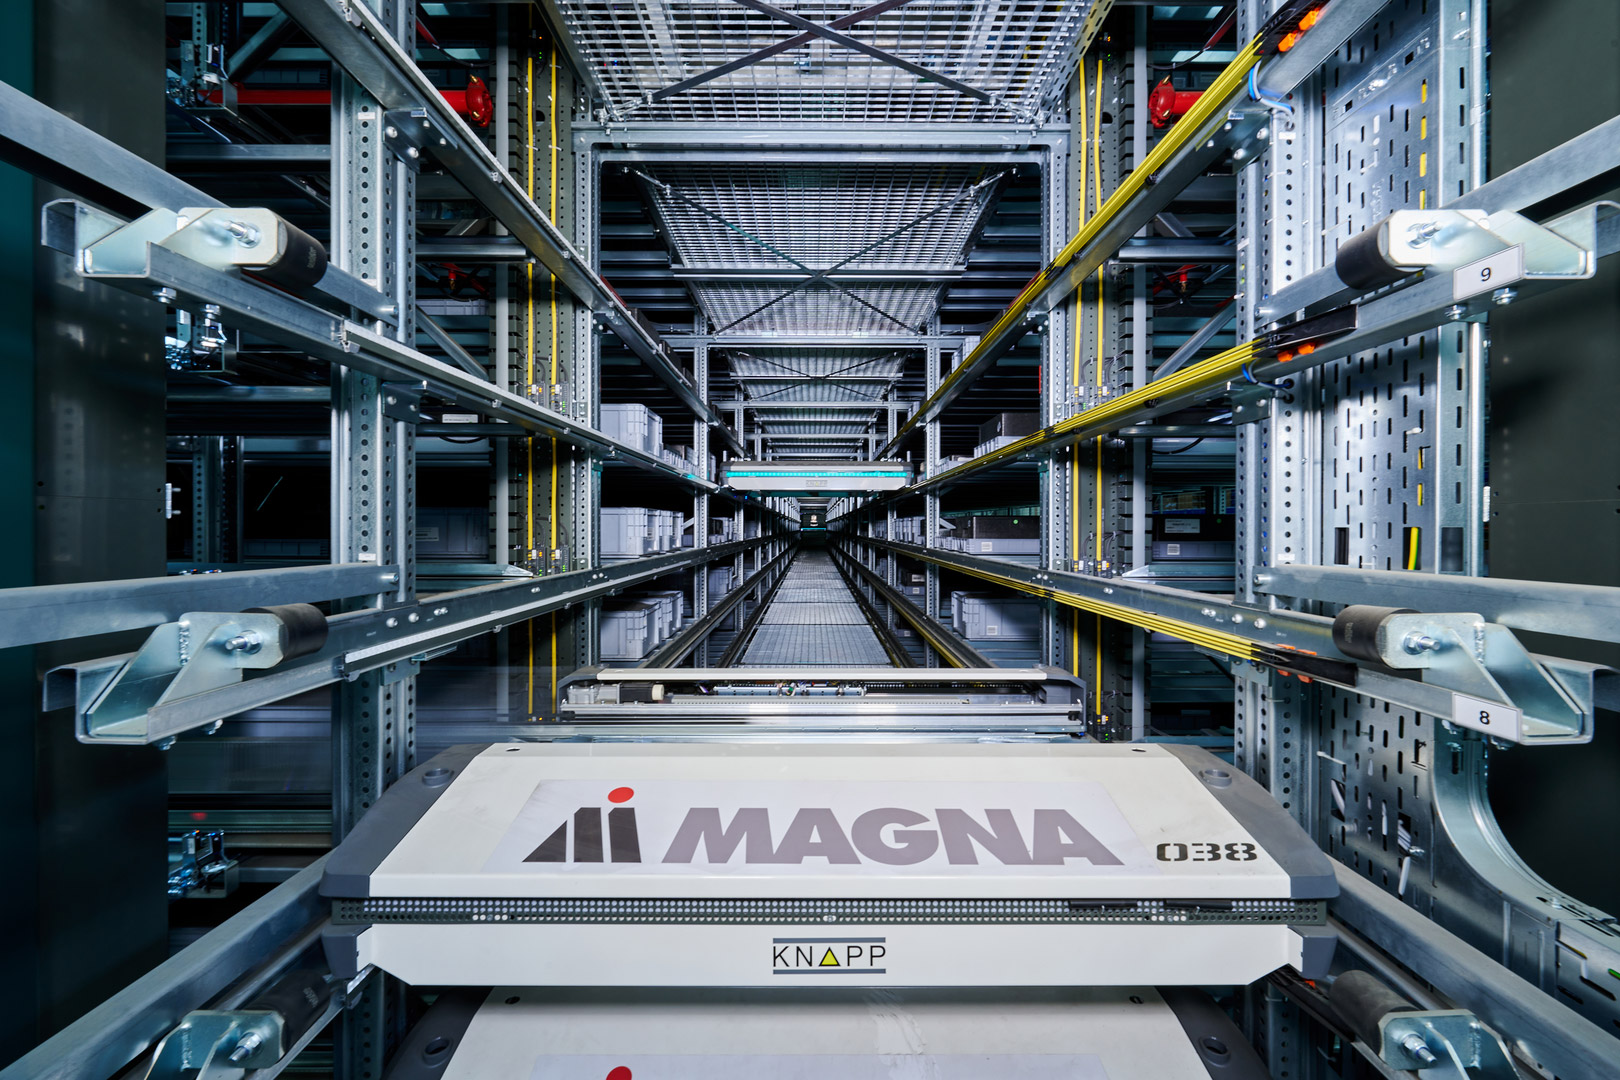 El OSR Shuttle de Magna sirve como sistema de almacenamiento central de piezas para el ensamblaje y la producción, así como almacenamiento de cajas vacías.